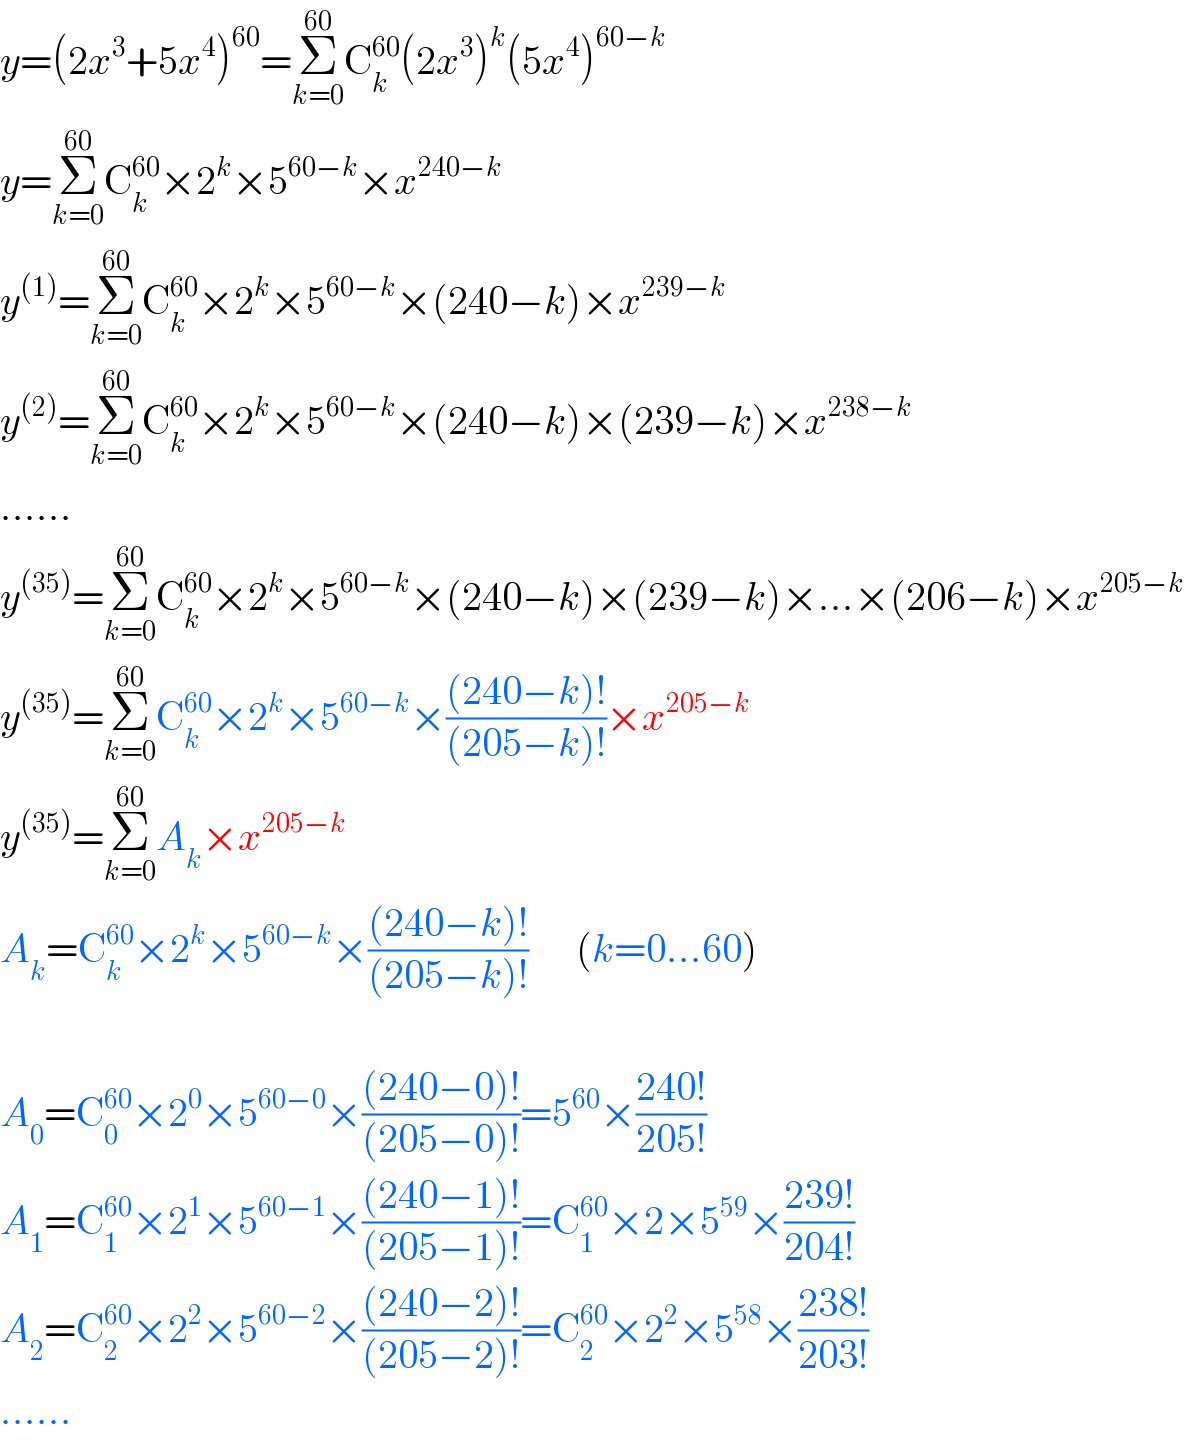 y=(2x^3 +5x^4 )^(60) =Σ_(k=0) ^(60) C_k ^(60) (2x^3 )^k (5x^4 )^(60−k)   y=Σ_(k=0) ^(60) C_k ^(60) ×2^k ×5^(60−k) ×x^(240−k)   y^((1)) =Σ_(k=0) ^(60) C_k ^(60) ×2^k ×5^(60−k) ×(240−k)×x^(239−k)   y^((2)) =Σ_(k=0) ^(60) C_k ^(60) ×2^k ×5^(60−k) ×(240−k)×(239−k)×x^(238−k)   ......  y^((35)) =Σ_(k=0) ^(60) C_k ^(60) ×2^k ×5^(60−k) ×(240−k)×(239−k)×...×(206−k)×x^(205−k)   y^((35)) =Σ_(k=0) ^(60) C_k ^(60) ×2^k ×5^(60−k) ×(((240−k)!)/((205−k)!))×x^(205−k)   y^((35)) =Σ_(k=0) ^(60) A_k ×x^(205−k)   A_k =C_k ^(60) ×2^k ×5^(60−k) ×(((240−k)!)/((205−k)!))      (k=0...60)    A_0 =C_0 ^(60) ×2^0 ×5^(60−0) ×(((240−0)!)/((205−0)!))=5^(60) ×((240!)/(205!))  A_1 =C_1 ^(60) ×2^1 ×5^(60−1) ×(((240−1)!)/((205−1)!))=C_1 ^(60) ×2×5^(59) ×((239!)/(204!))  A_2 =C_2 ^(60) ×2^2 ×5^(60−2) ×(((240−2)!)/((205−2)!))=C_2 ^(60) ×2^2 ×5^(58) ×((238!)/(203!))  ......  